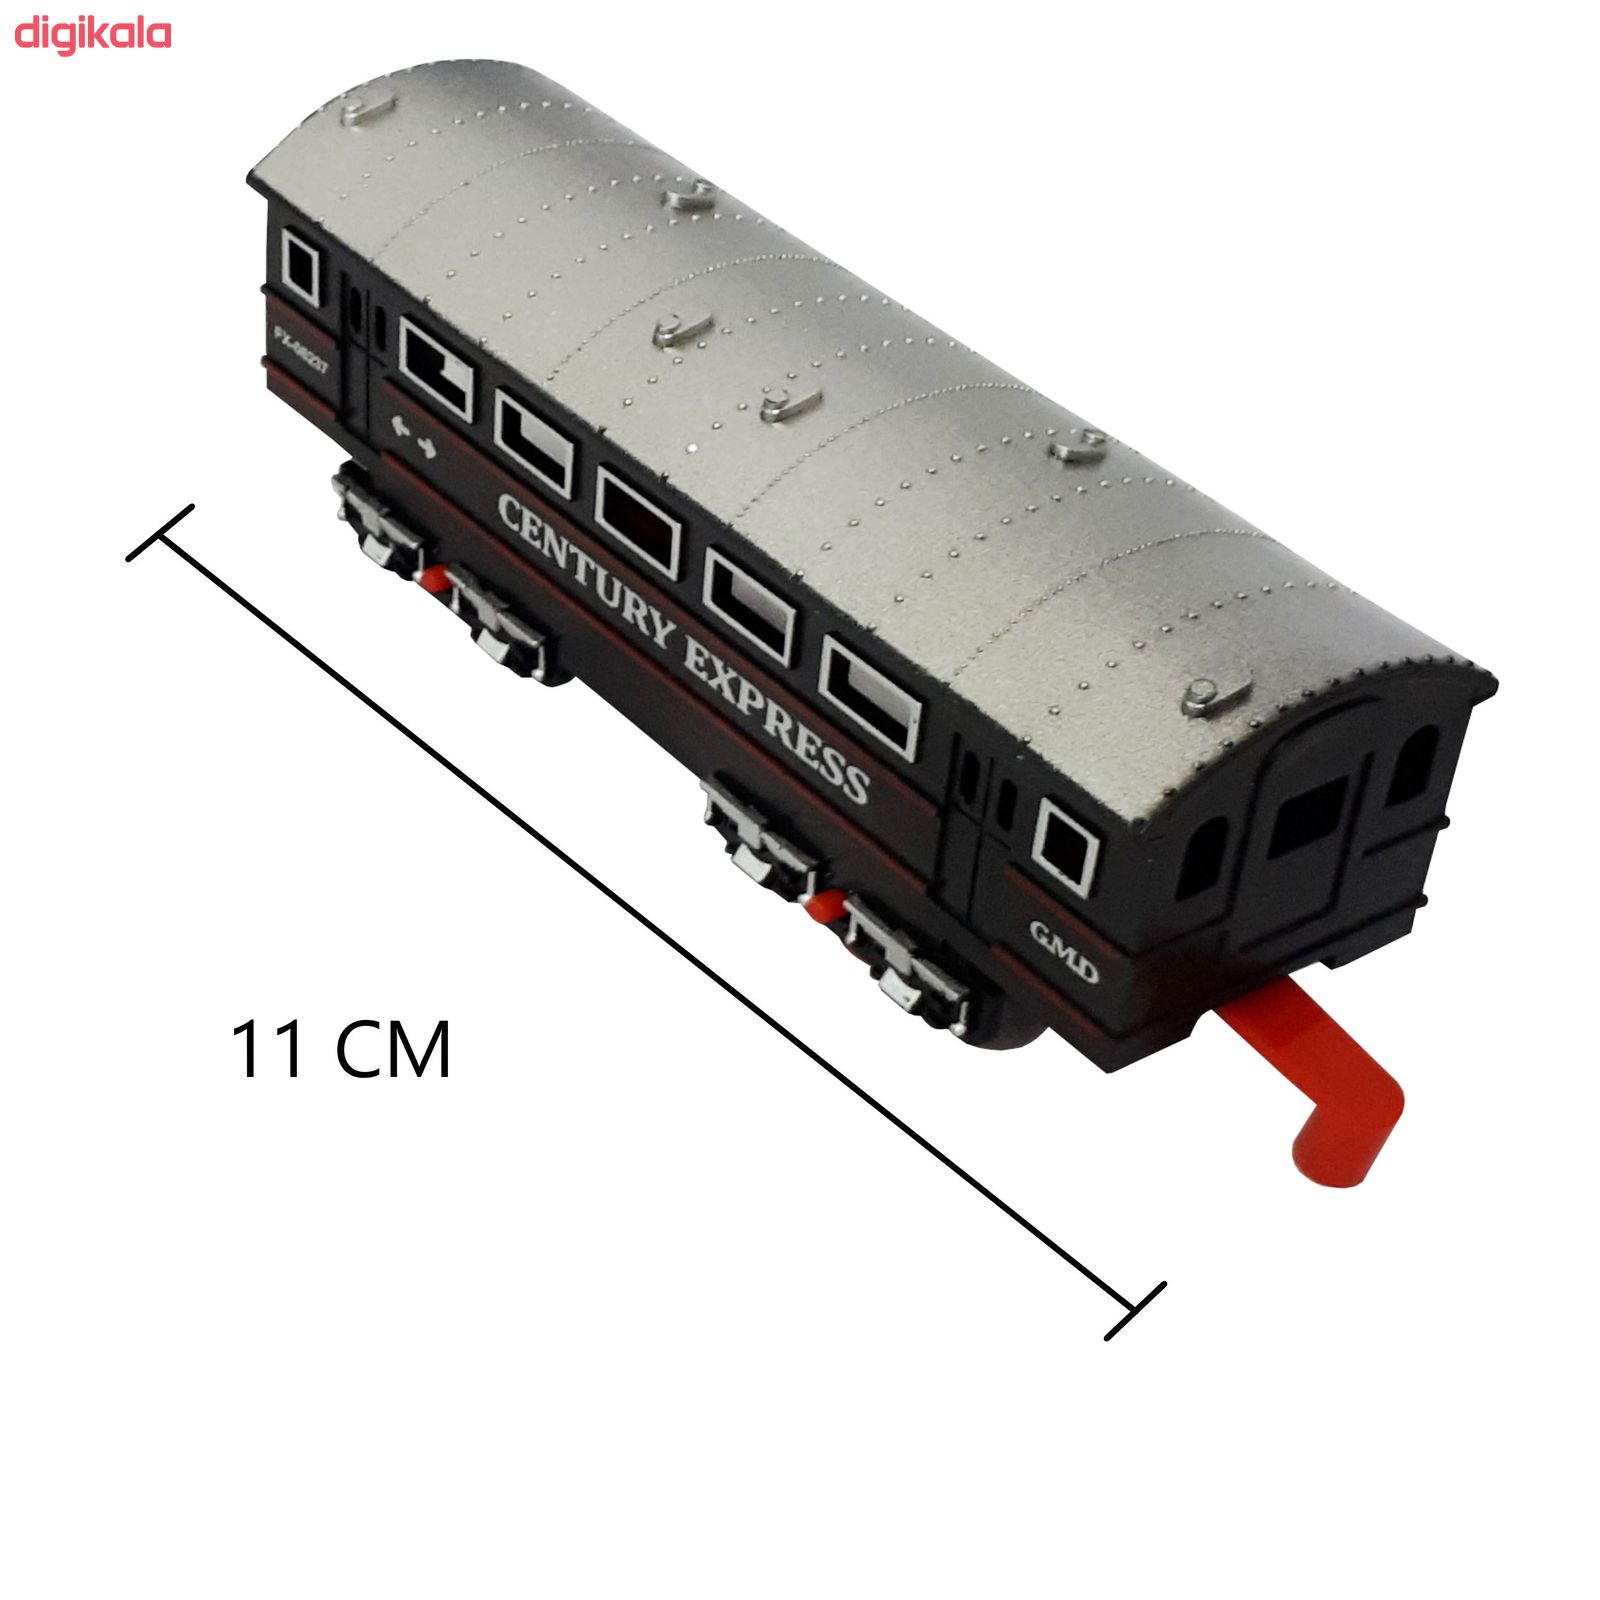 قطار بازی زد جی ال مدل VINTAGE TRAIN کد 5299-68